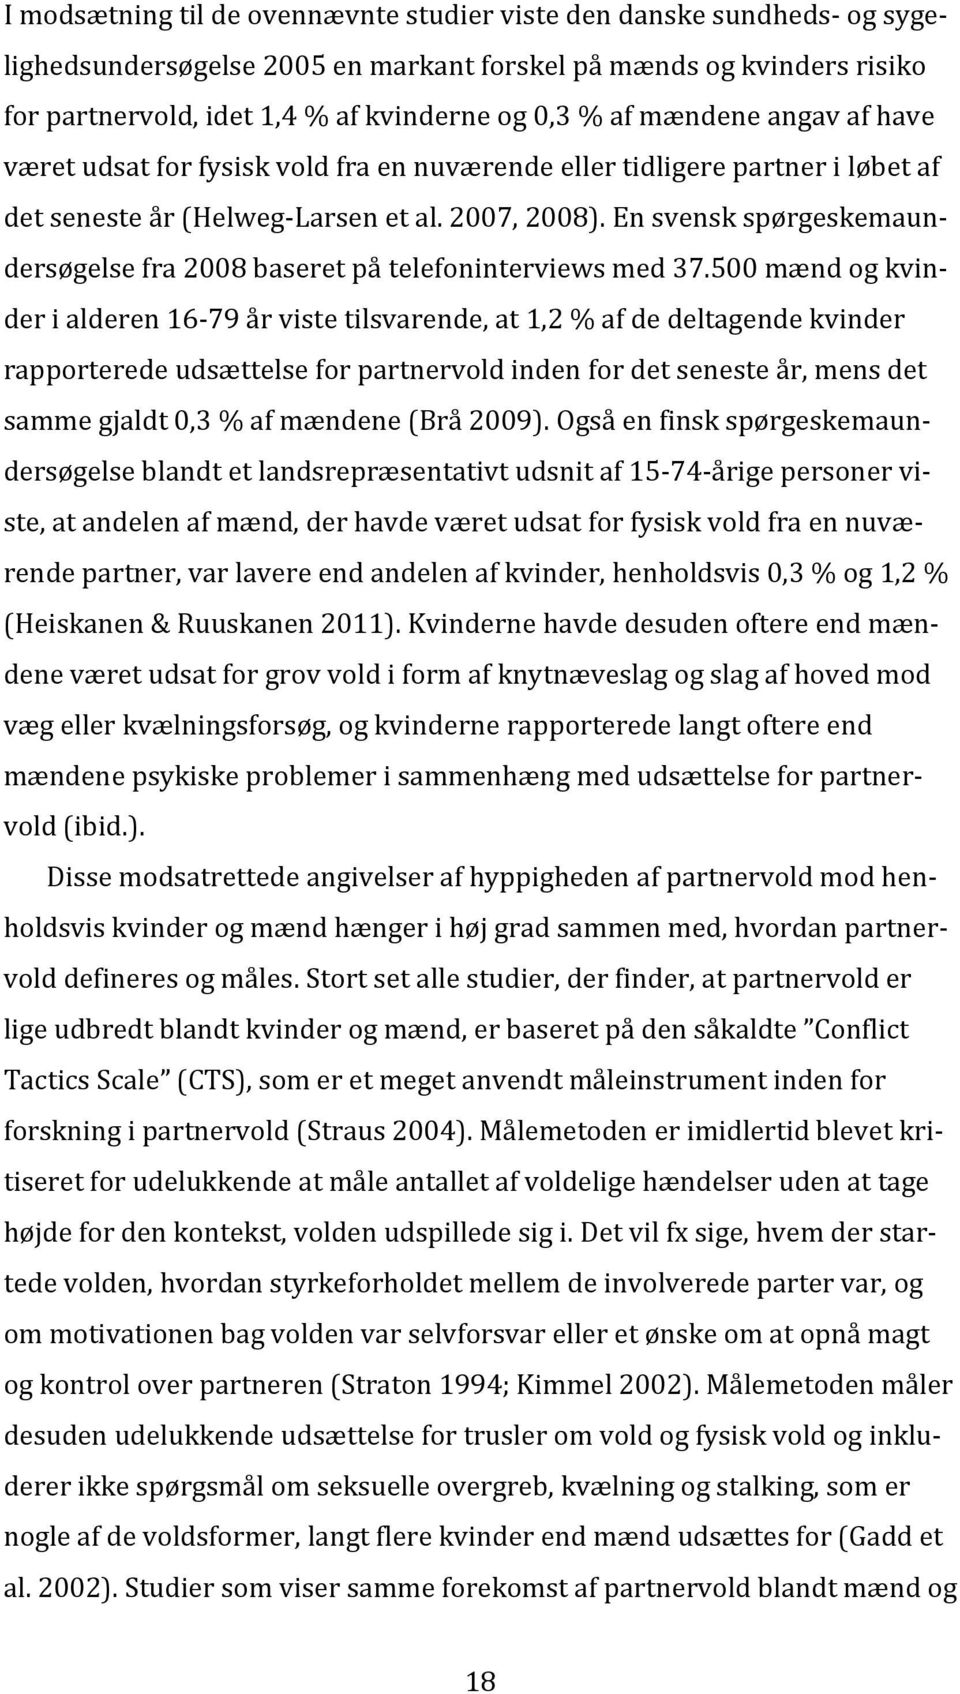 En svensk spørgeskemaundersøgelse fra 2008 baseret på telefoninterviews med 37.